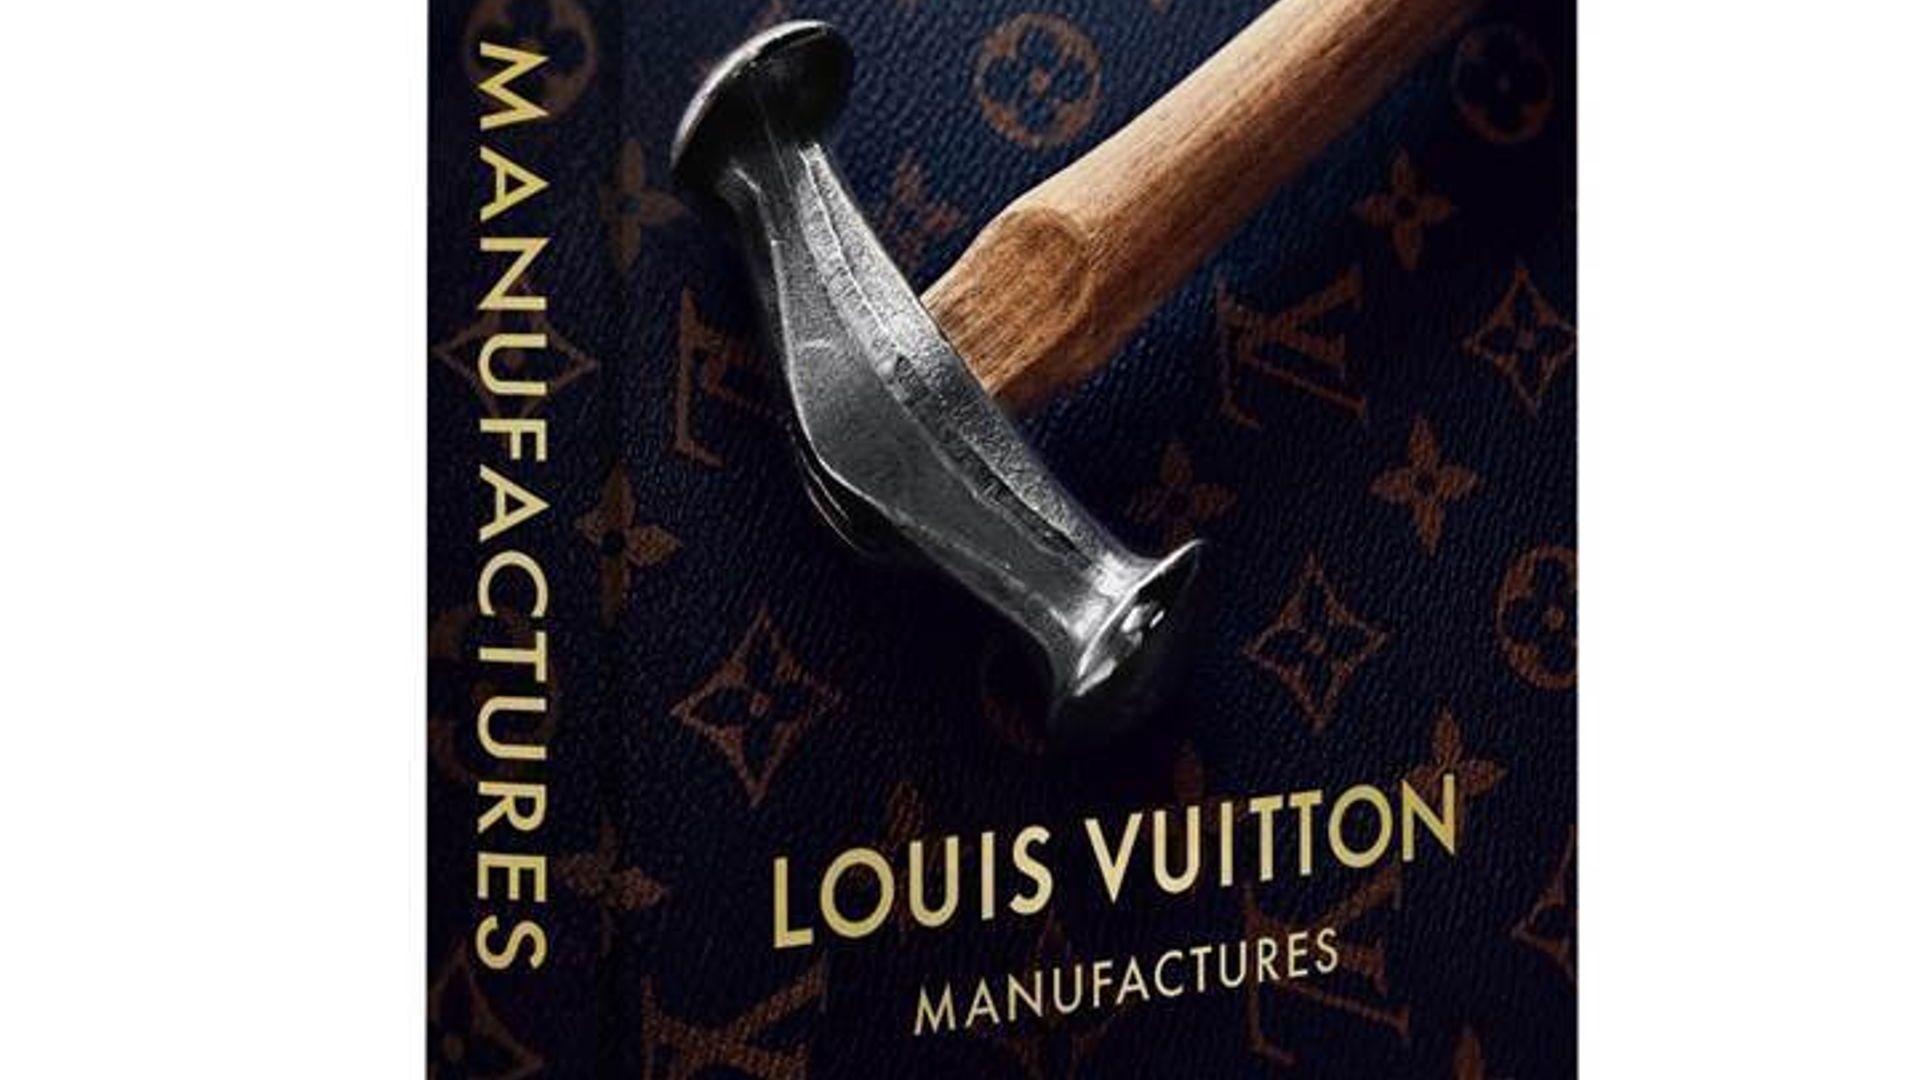 Novel 'Louis Vuitton, l'audacieux' Tells of Founder's Rise